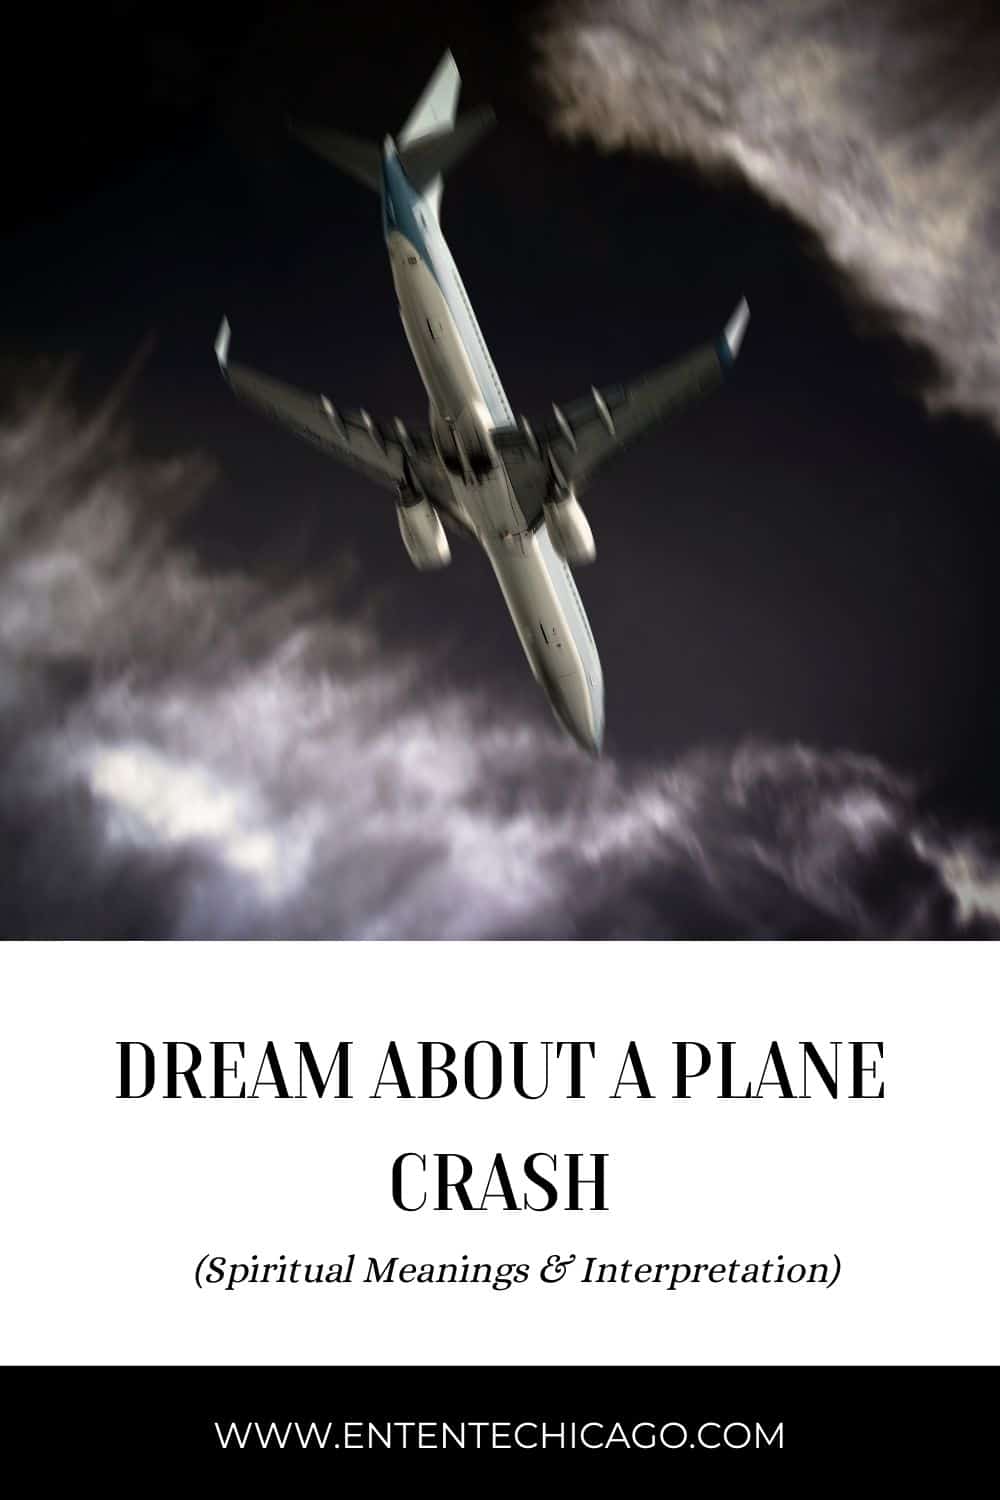  Soñar con testigo de accidente aéreo (Interpretación afortunada)